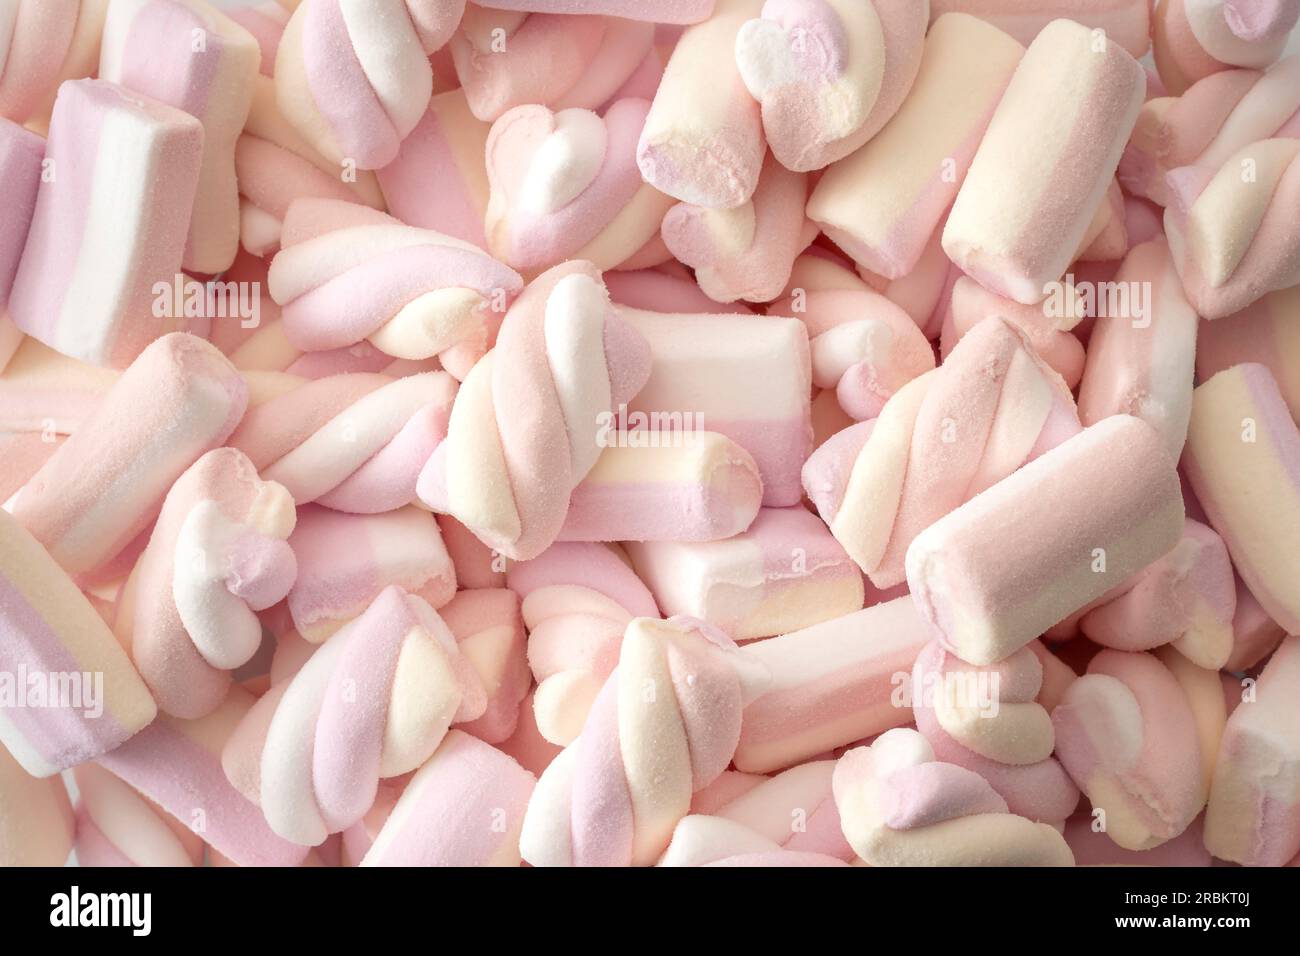 Primo piano full frame di marshmallow rosa e bianco impilati: Concetto per dolcetti zuccherati dolci, indulgenza malsana, snack alimentari ad alta caloria, diabete Ri Foto Stock